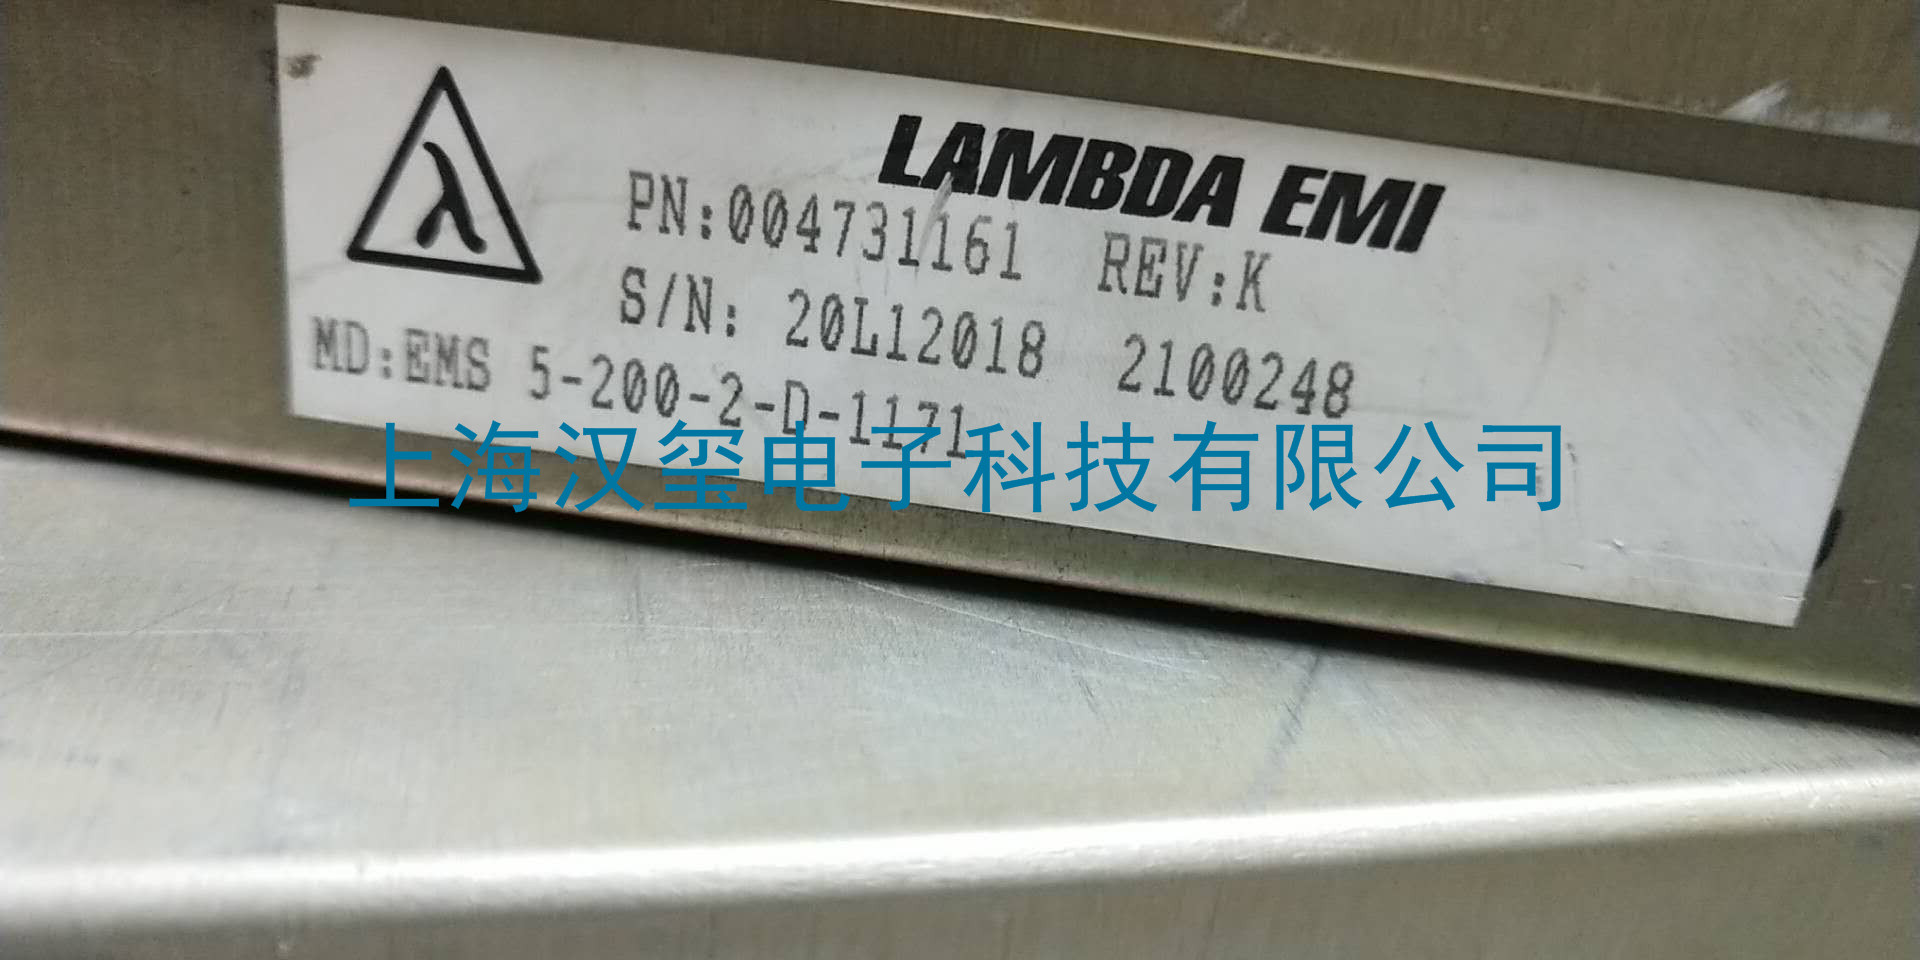 维修品牌LAMBDAEMI--型号EMS 5-200-2-D-1171